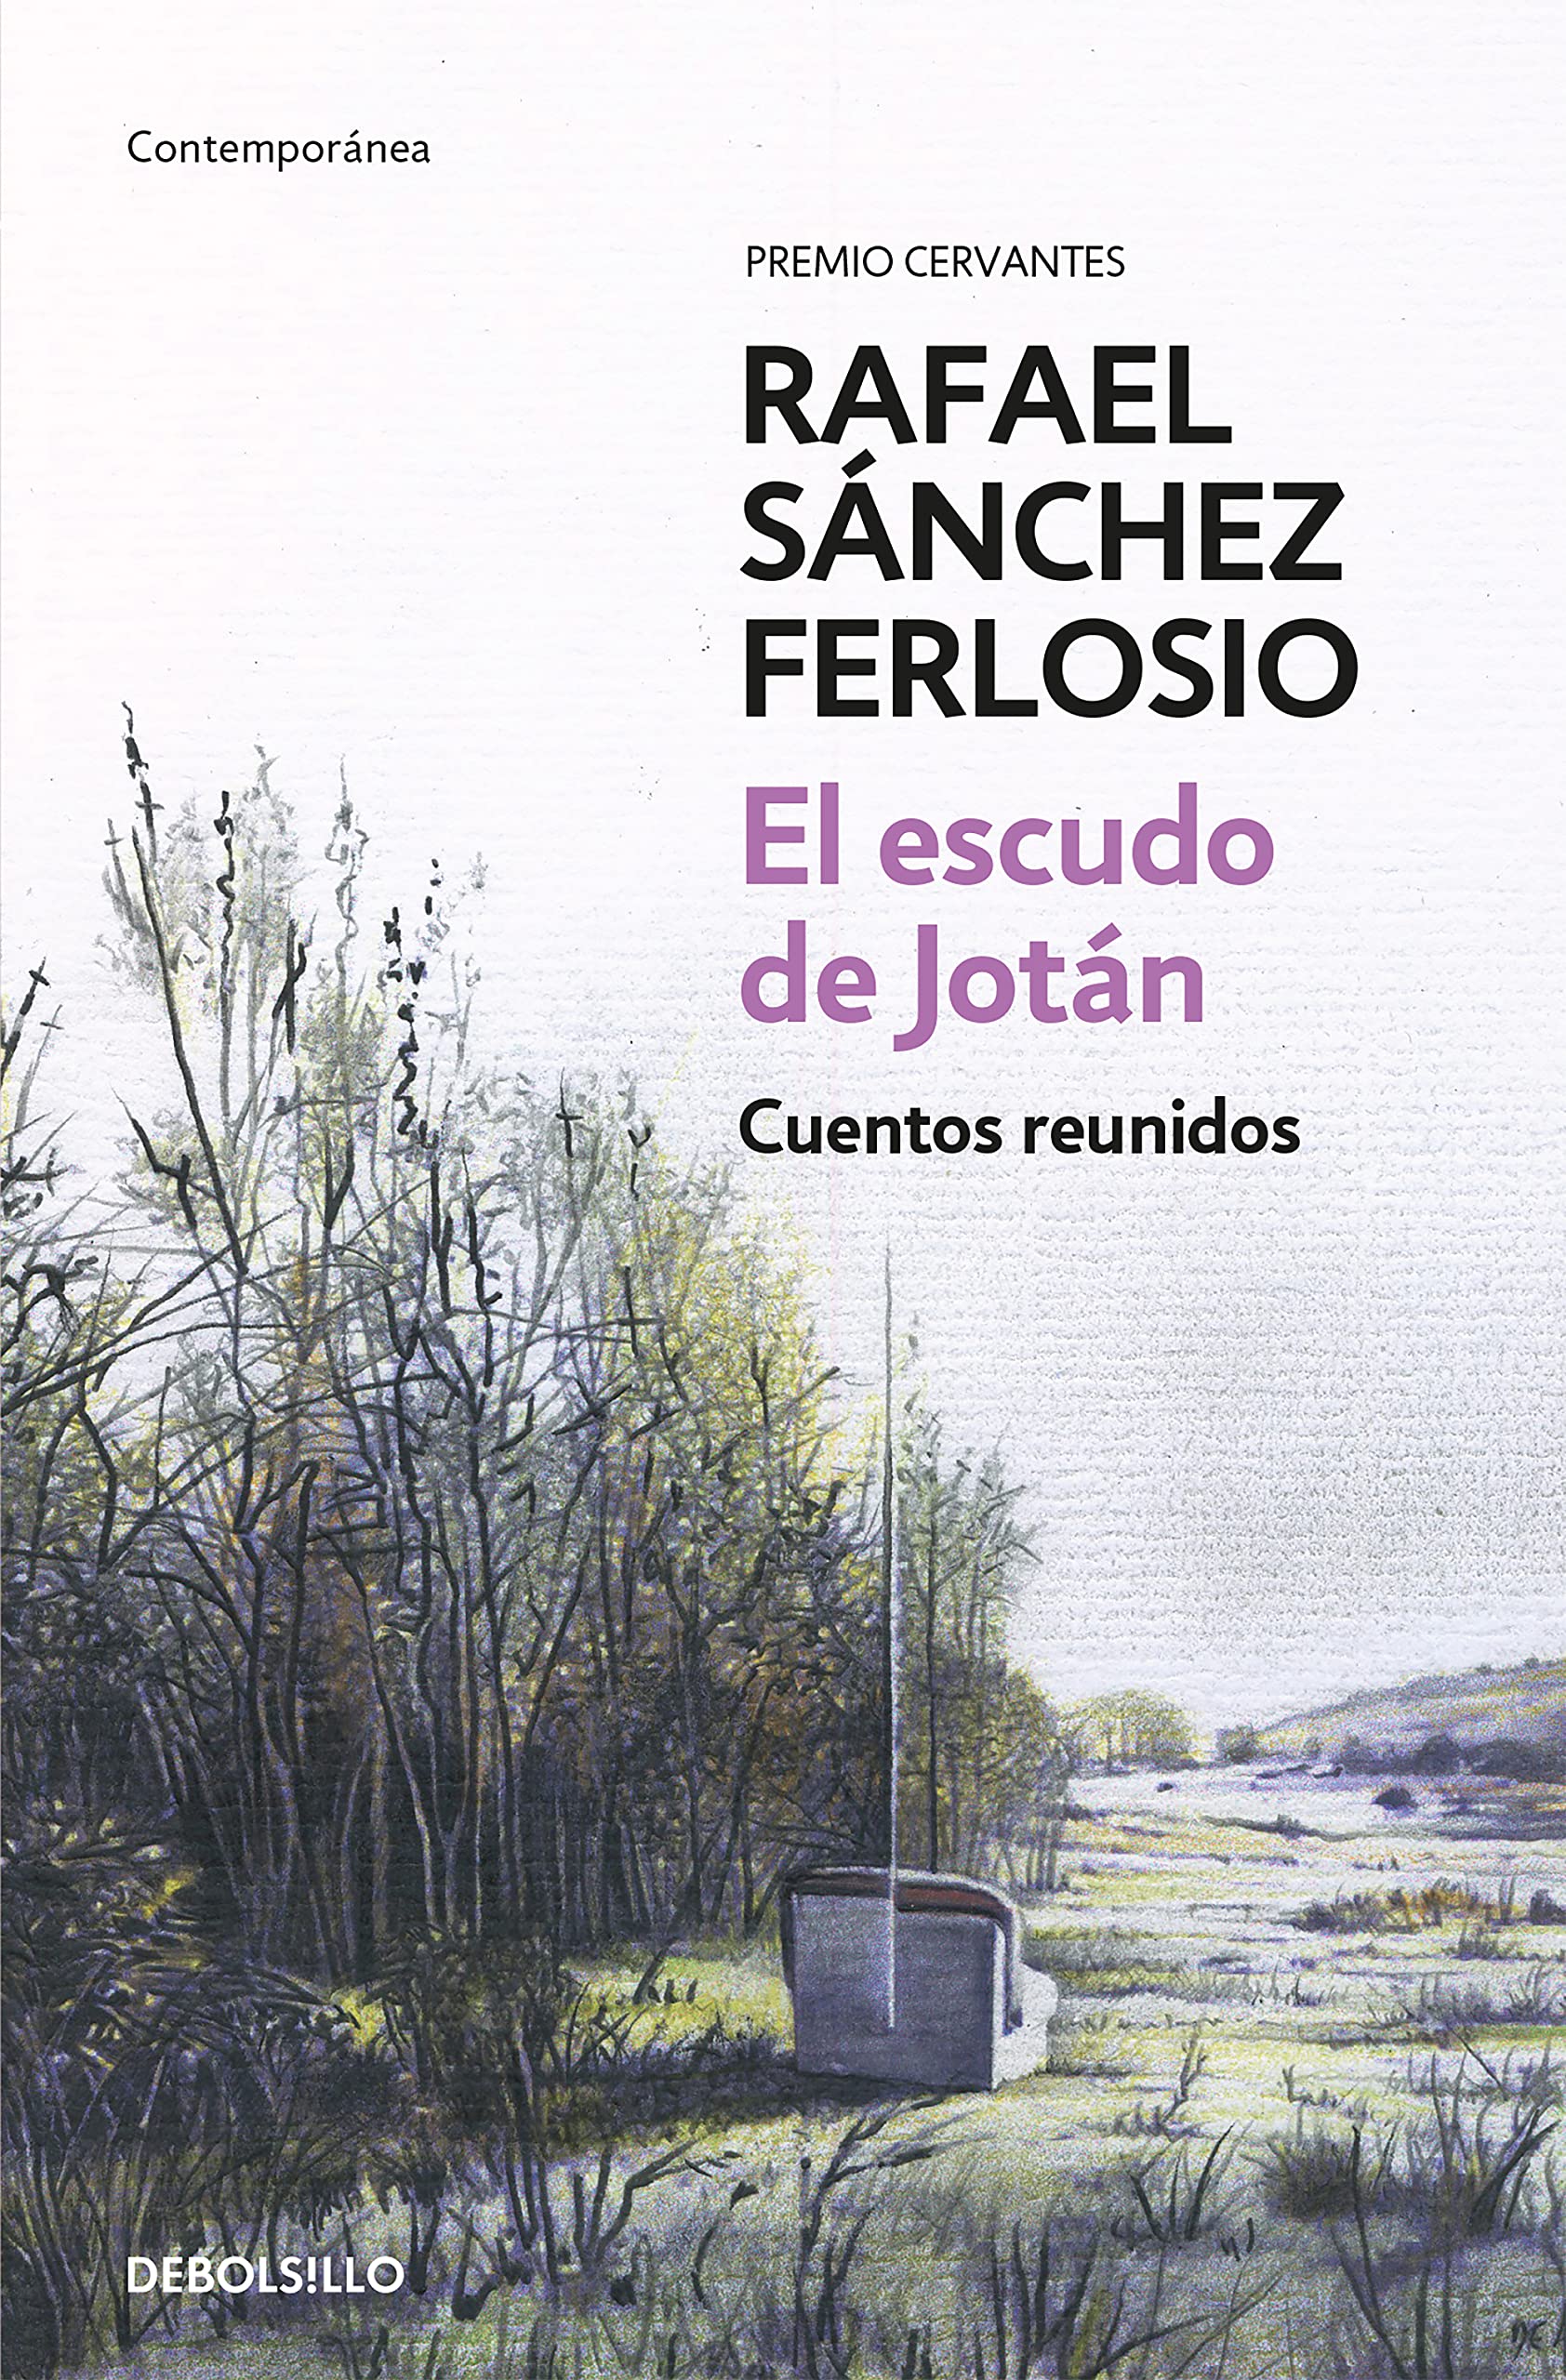 Zenda recomienda: El escudo de Jotán. Cuentos reunidos, de Rafael Sánchez Ferlosio